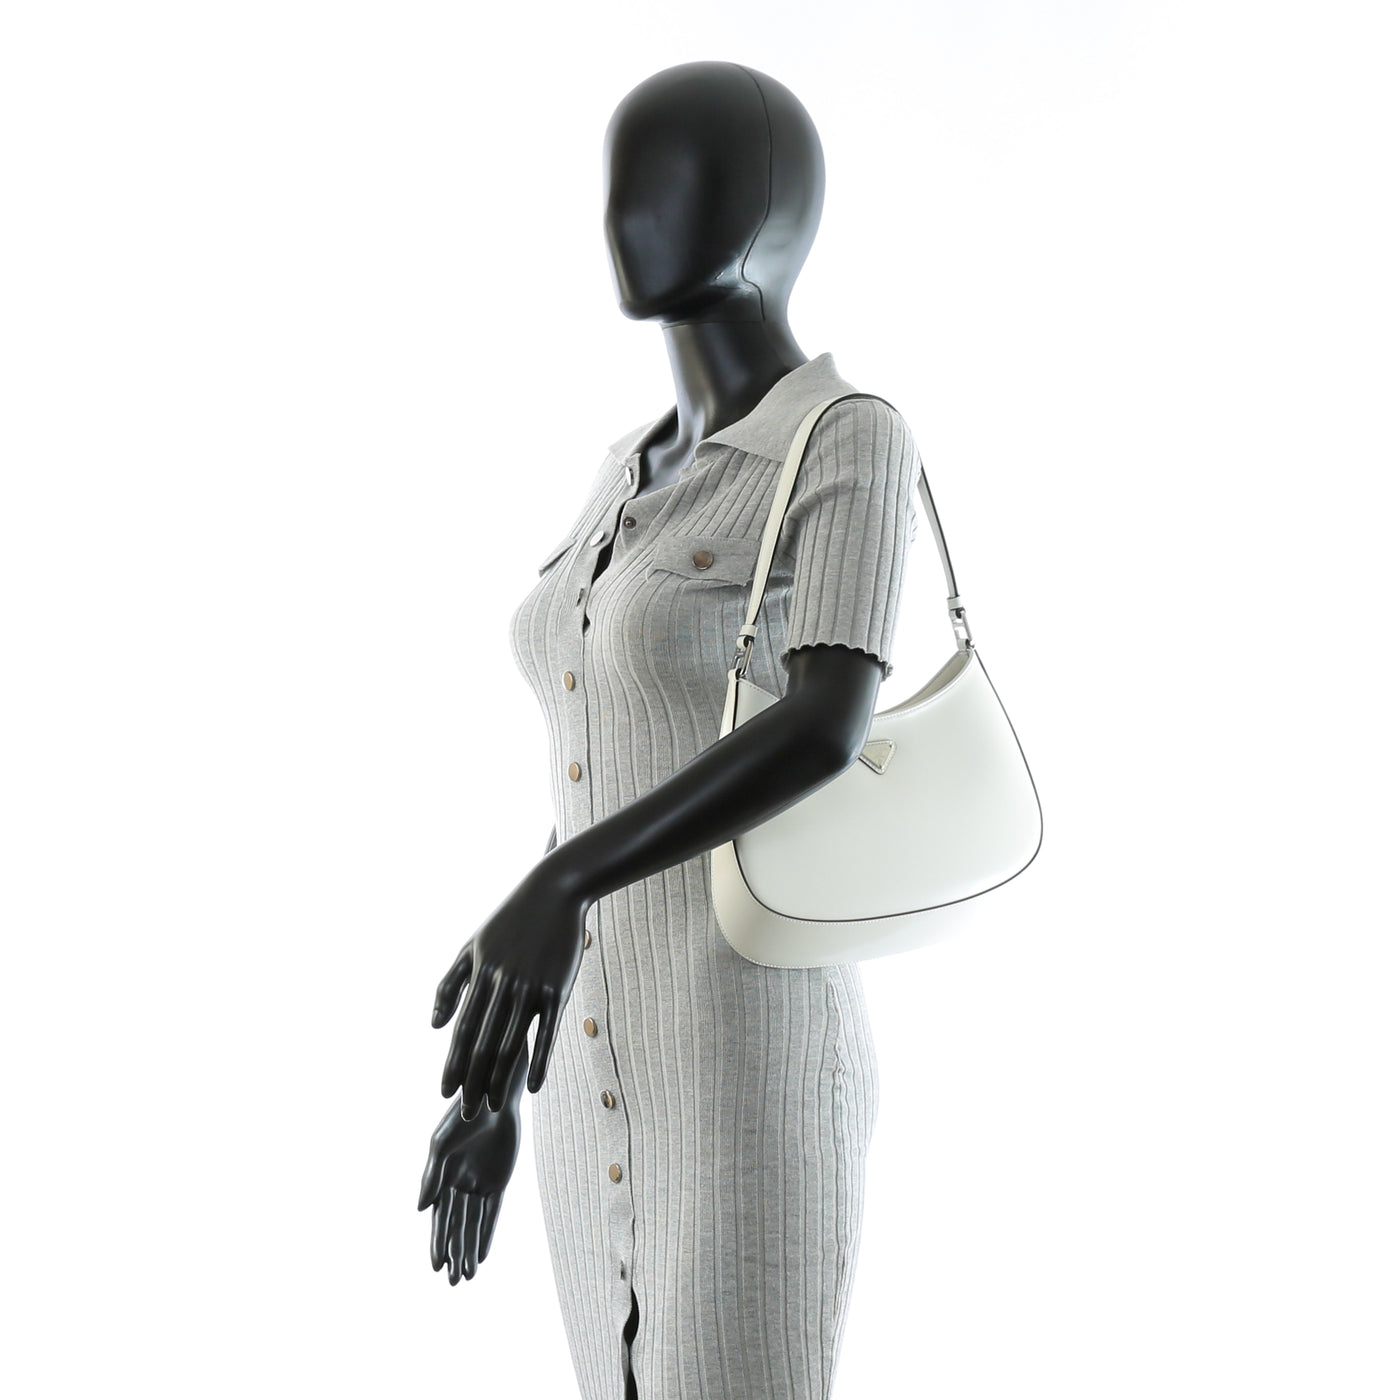 PRADA Cleo Brushed Leather Shoulder Bag - White